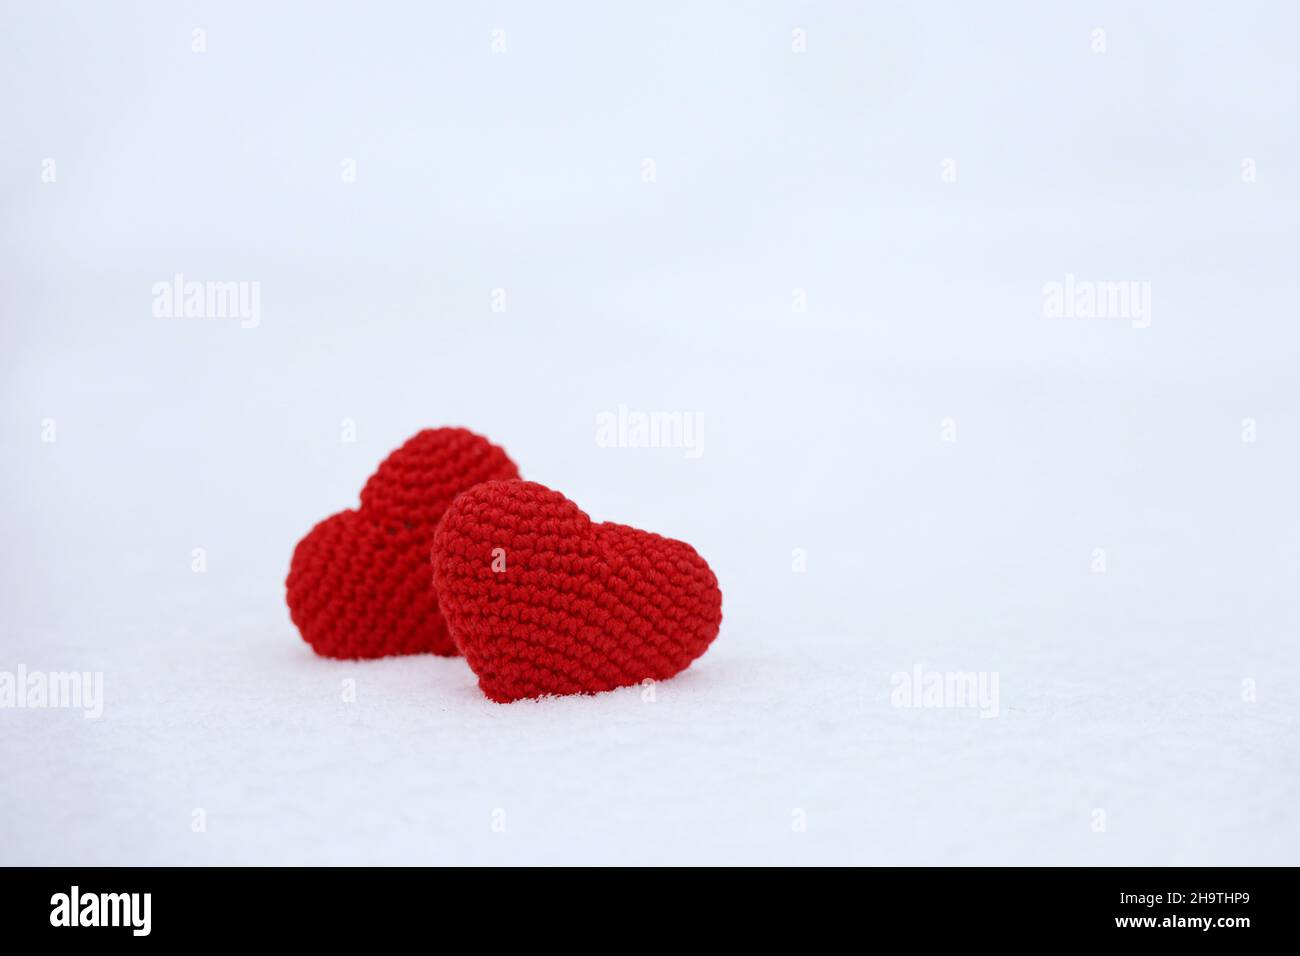 Liebe Herzen im Schnee, Winter Natur. Valentinskarte, zwei gestrickte rote Symbole der Liebe, Hintergrund für romantische Veranstaltung, Weihnachtsfeier Stockfoto